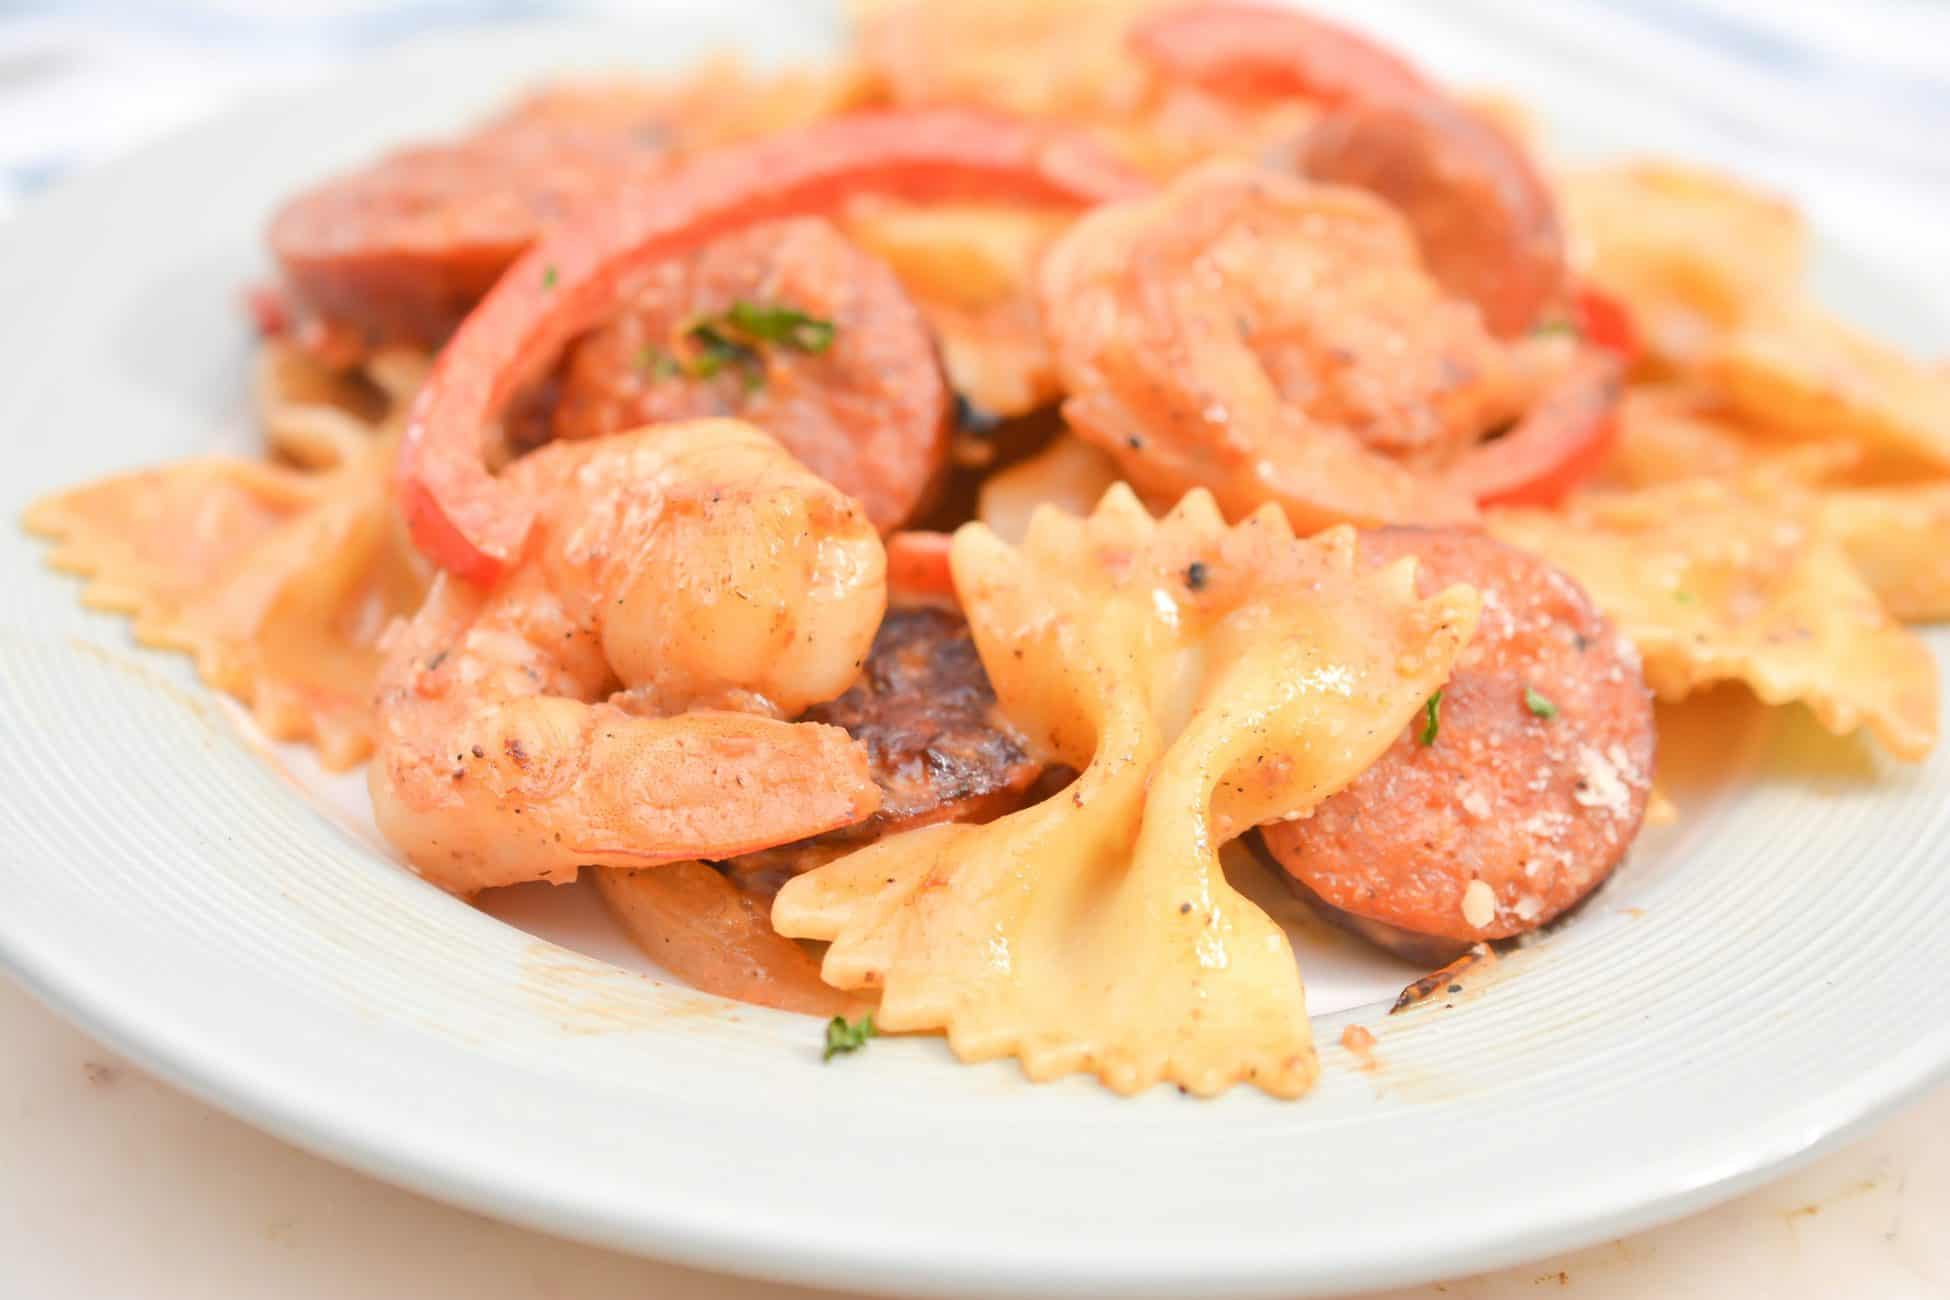 cajun shrimp pasta with sausage, cajun shrimp pasta, shrimp and sausage pasta